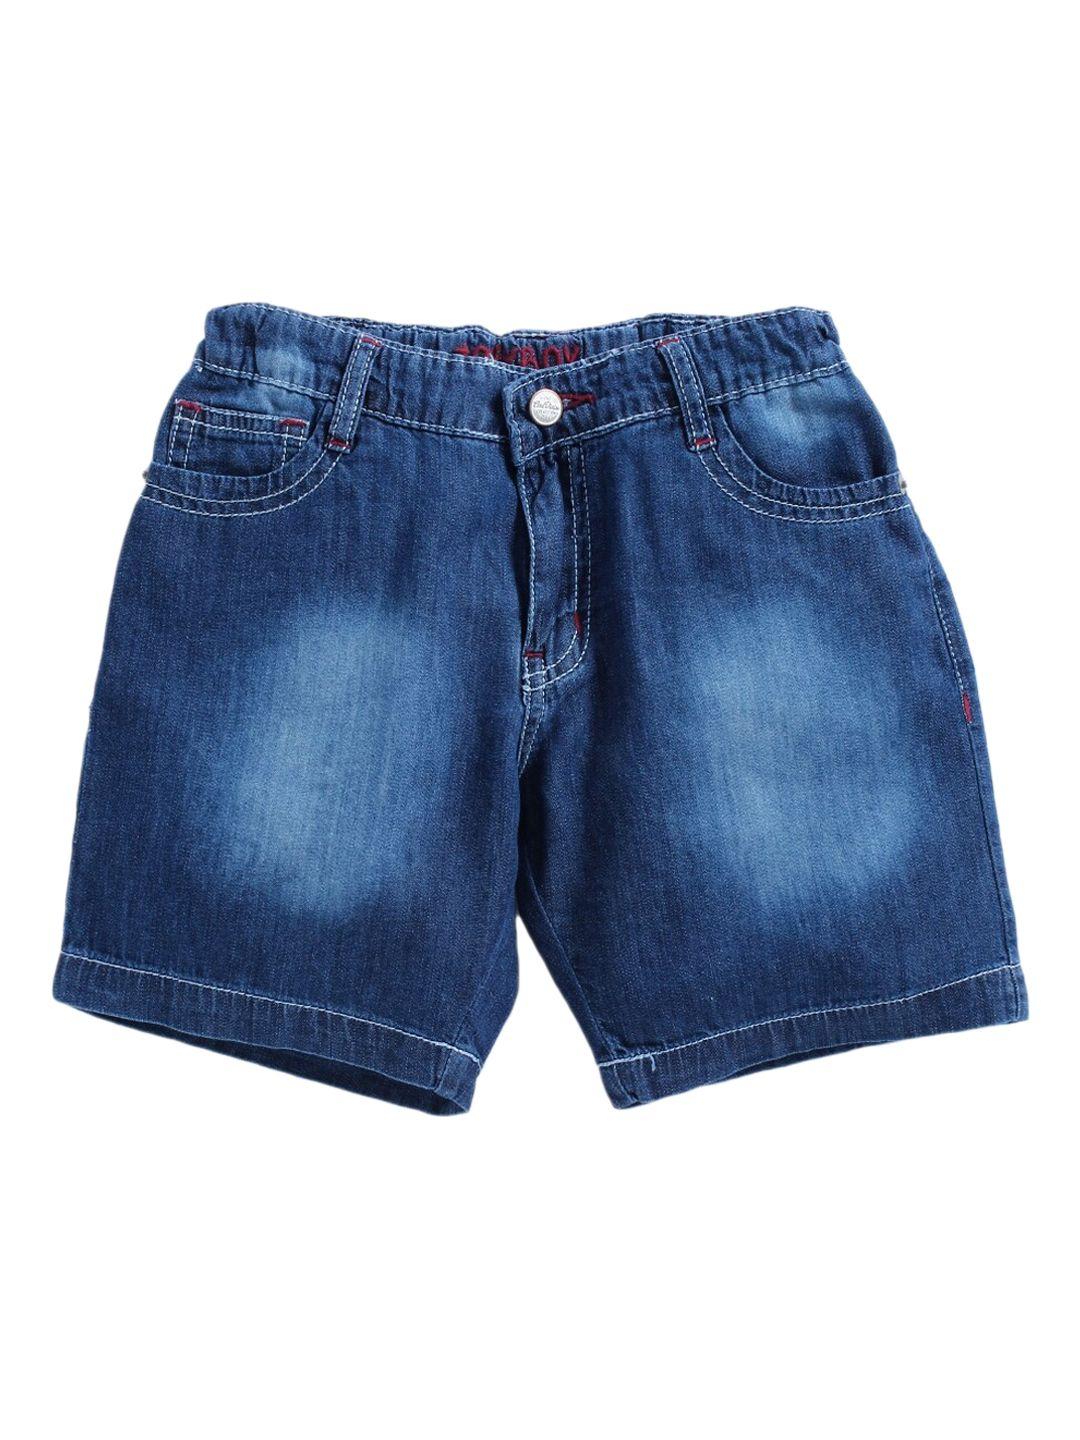 tonyboy boys blue washed denim outdoor pure cotton denim shorts